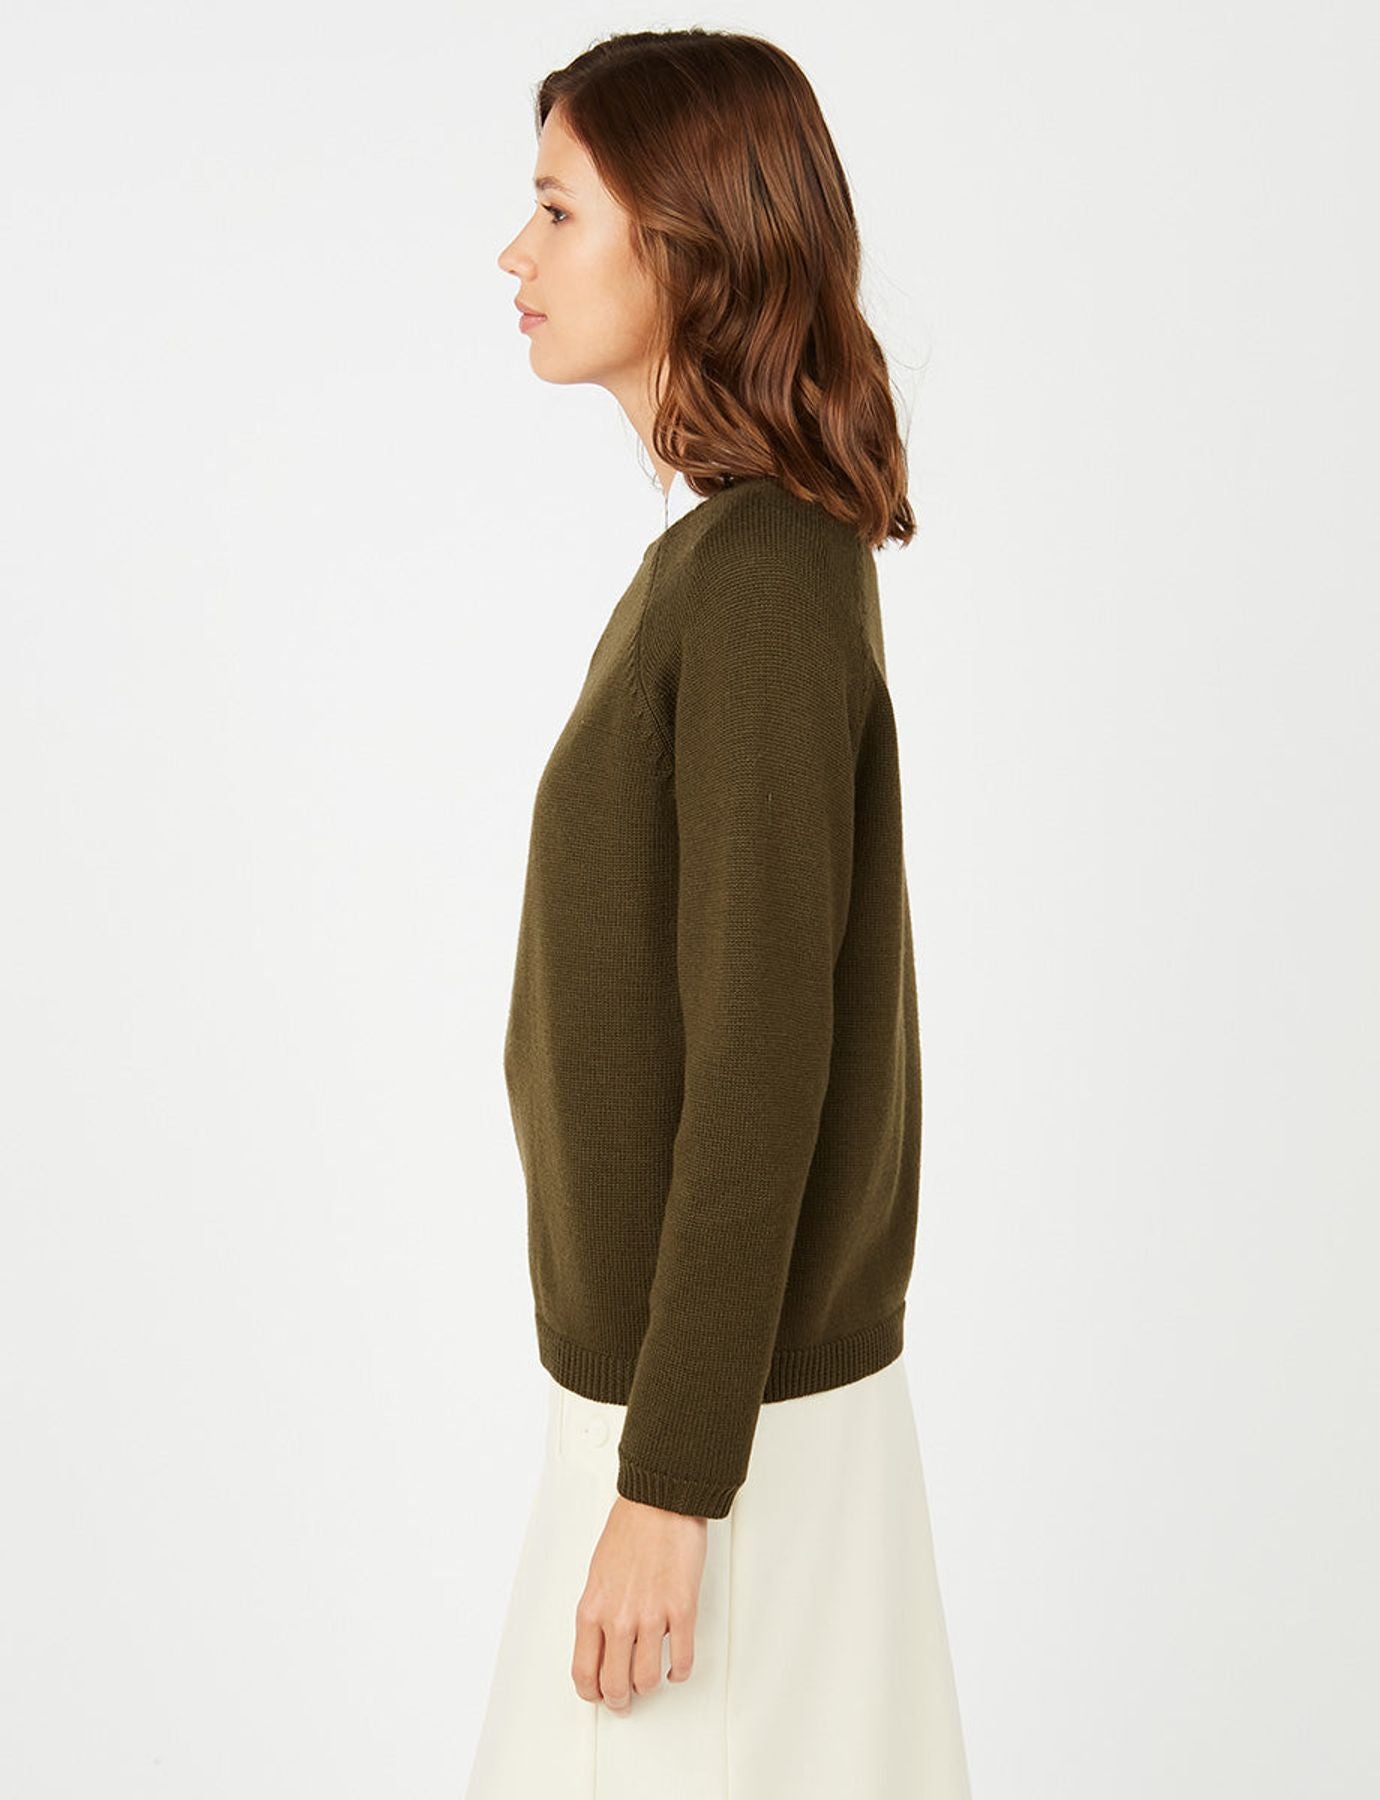 sweater-khaki